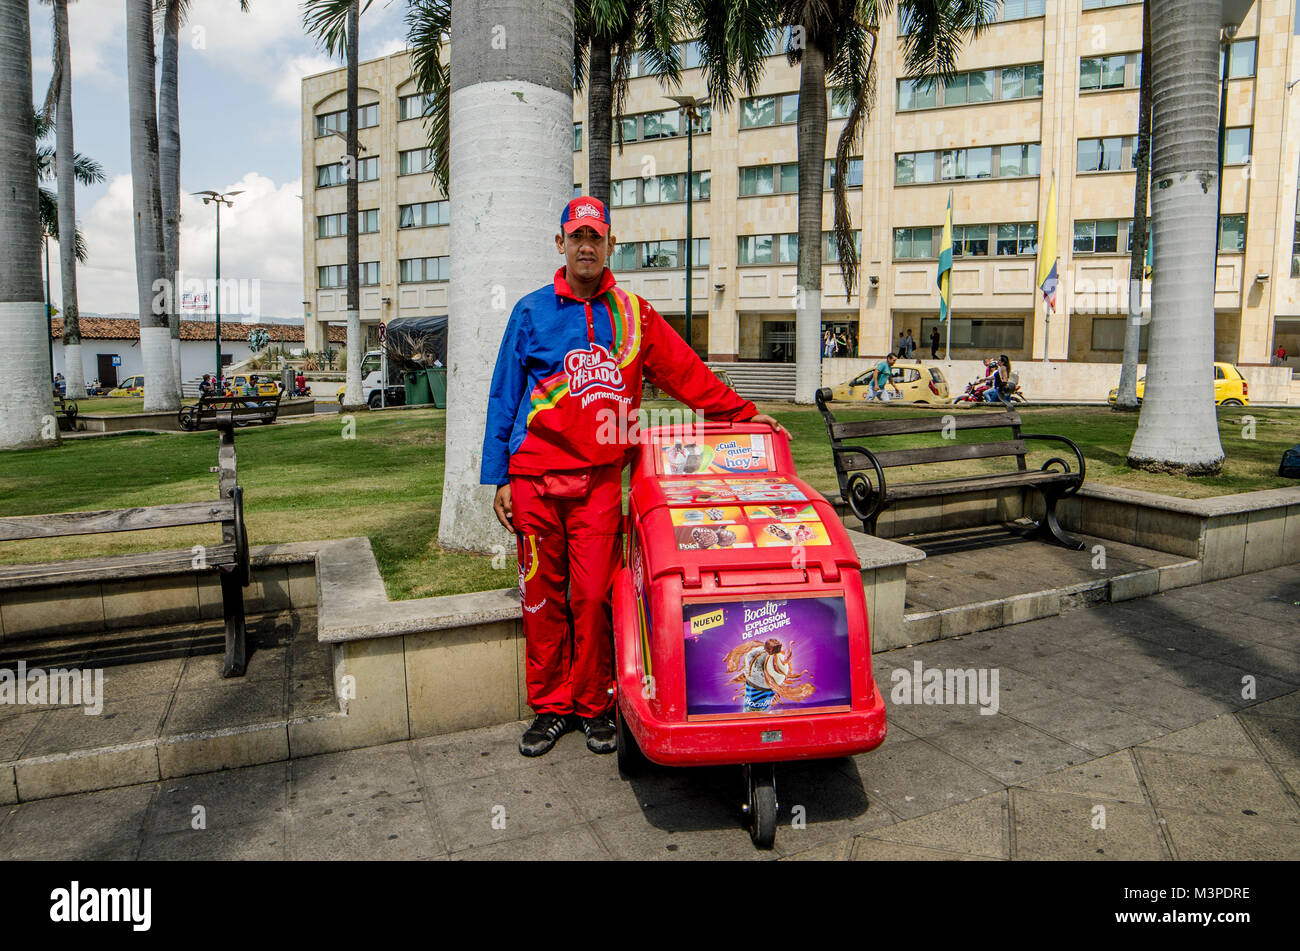 Rafael aus Venezuela steht neben seinen Wagen, die er verwendet, Eis auf den Straßen von Bucaramanga, Kolumbien, 8. Februar 2018 zu verkaufen. Rafael und seine Frau Carolina kamen über die Grenze in Cucuta. Wegen der unsicheren Situation, in der Sie beschlossen, Bucaramanga zu bewegen. Dort schliefen sie in der Central Park wie andere Venezolaner. Auf der Suche nach einem festen Einkommen, Rafael fand einen Job als Eis Anbieter. Mit dem Geld, das er verdient, dass er in der Lage ist eine Zuflucht in der Nacht zu leisten und den Rest seiner Kinder in Venezuela, die mit ihrer Großmutter live zu senden. Das Paar will, die in der Kolumbianischen zu vereinbaren Stockfoto